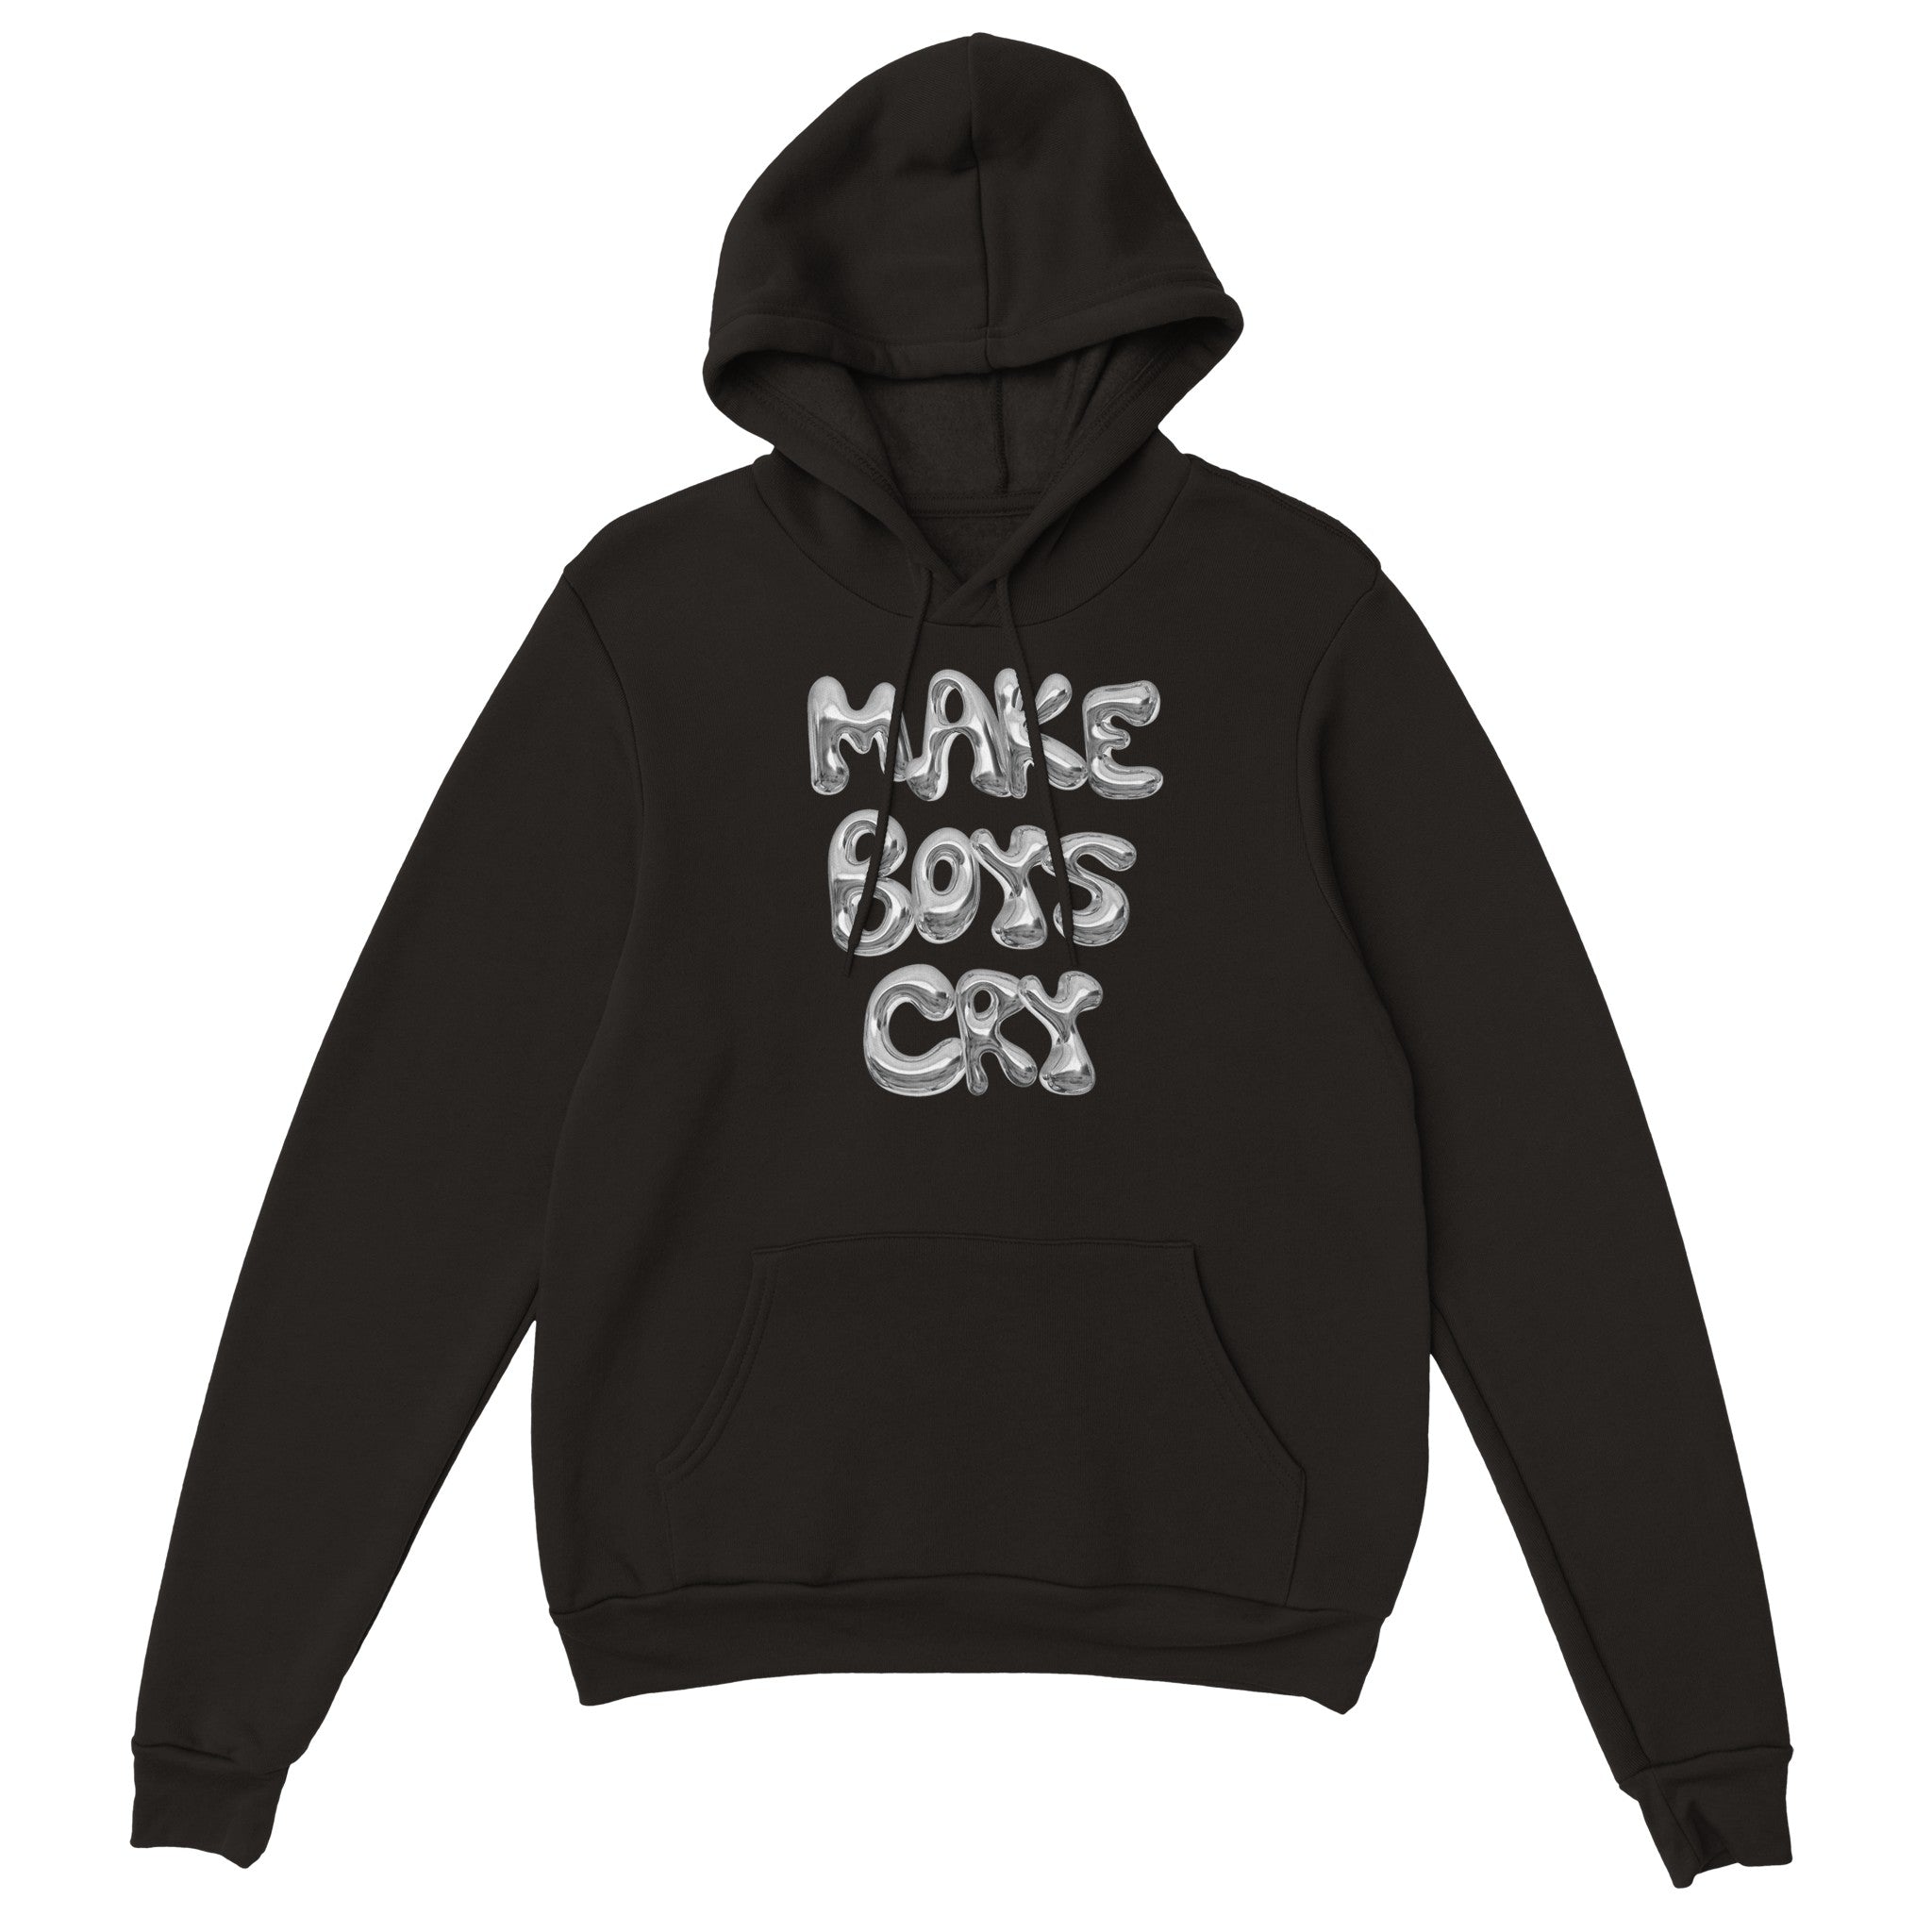 'Make Boys Cry' hoodie - In Print We Trust